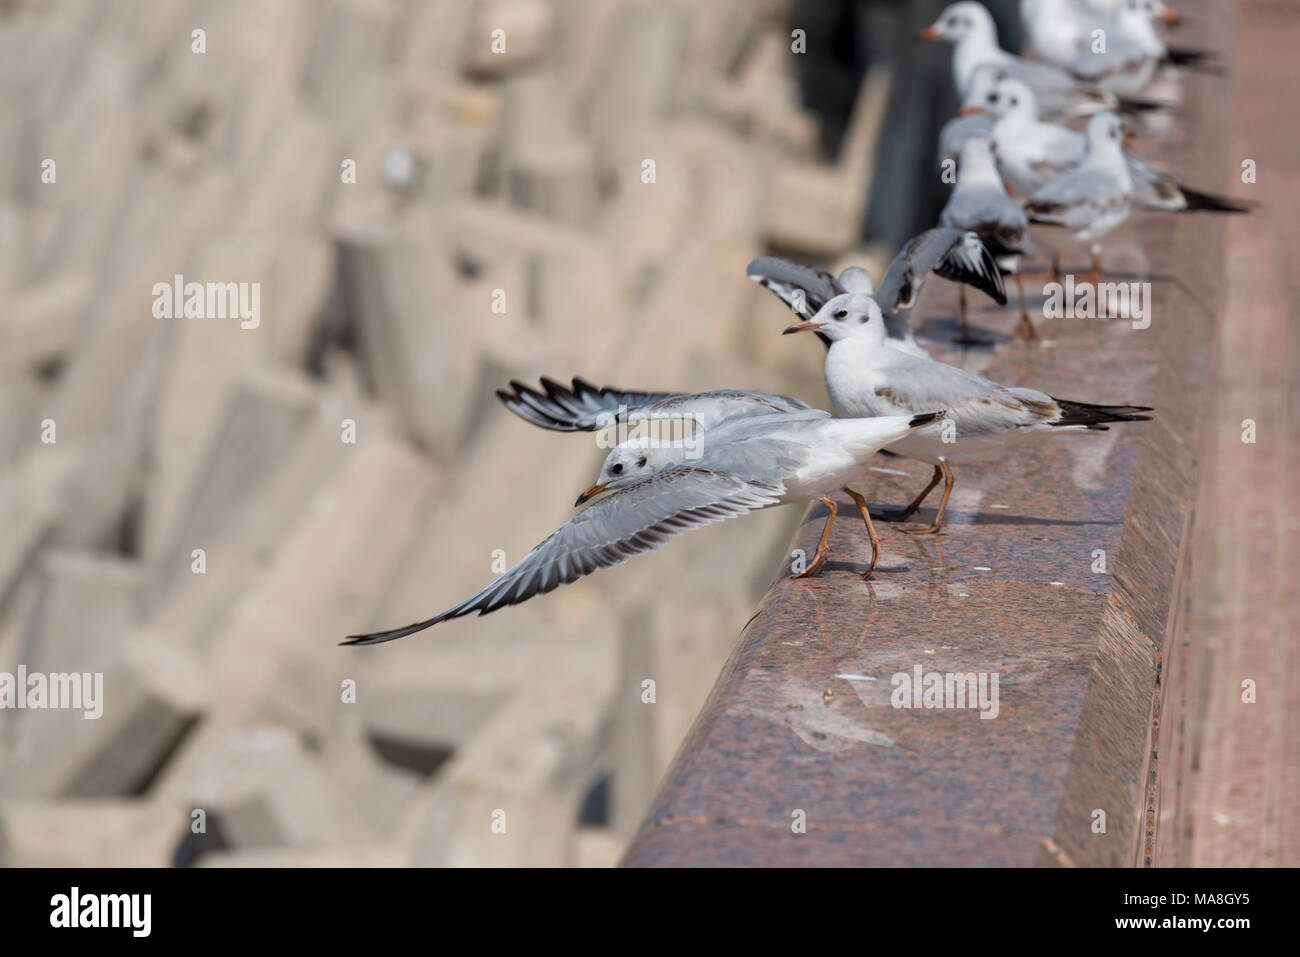 Sea Gull prêt à décoller avec ailes déployées vers l'avant. D'autres oiseaux s'alignent le long du mur Banque D'Images